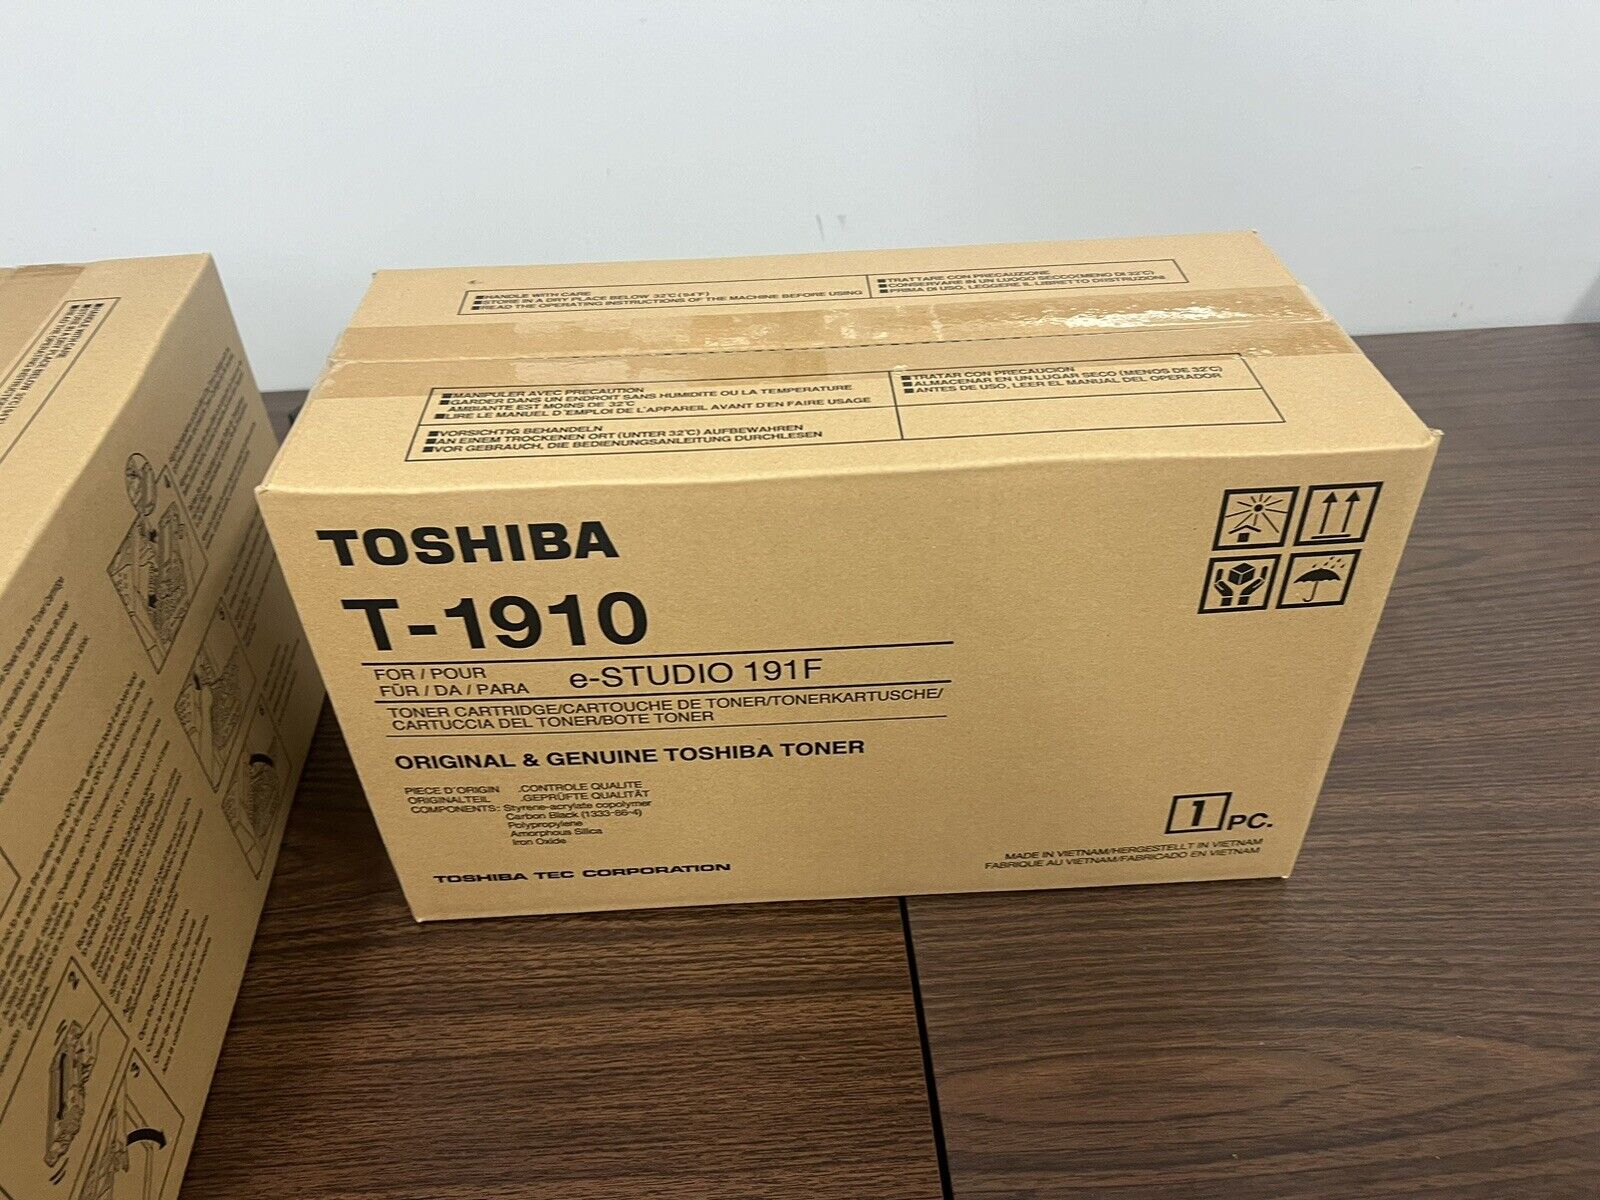 Toshiba T-1910 Toner E-Studio 191f